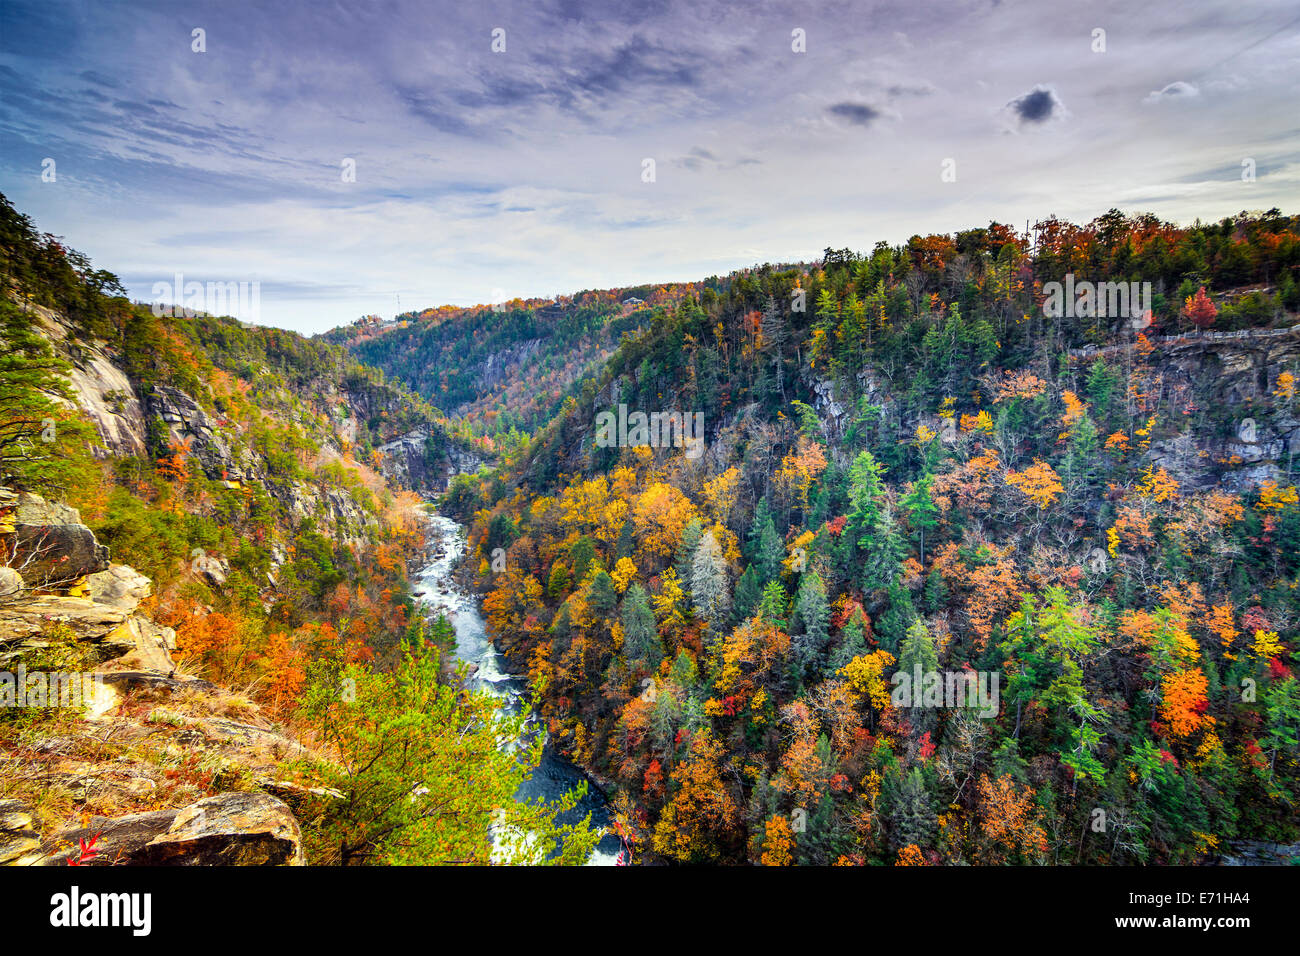 Gorges de Tallulah en Géorgie, USA au cours de saison d'automne. Banque D'Images